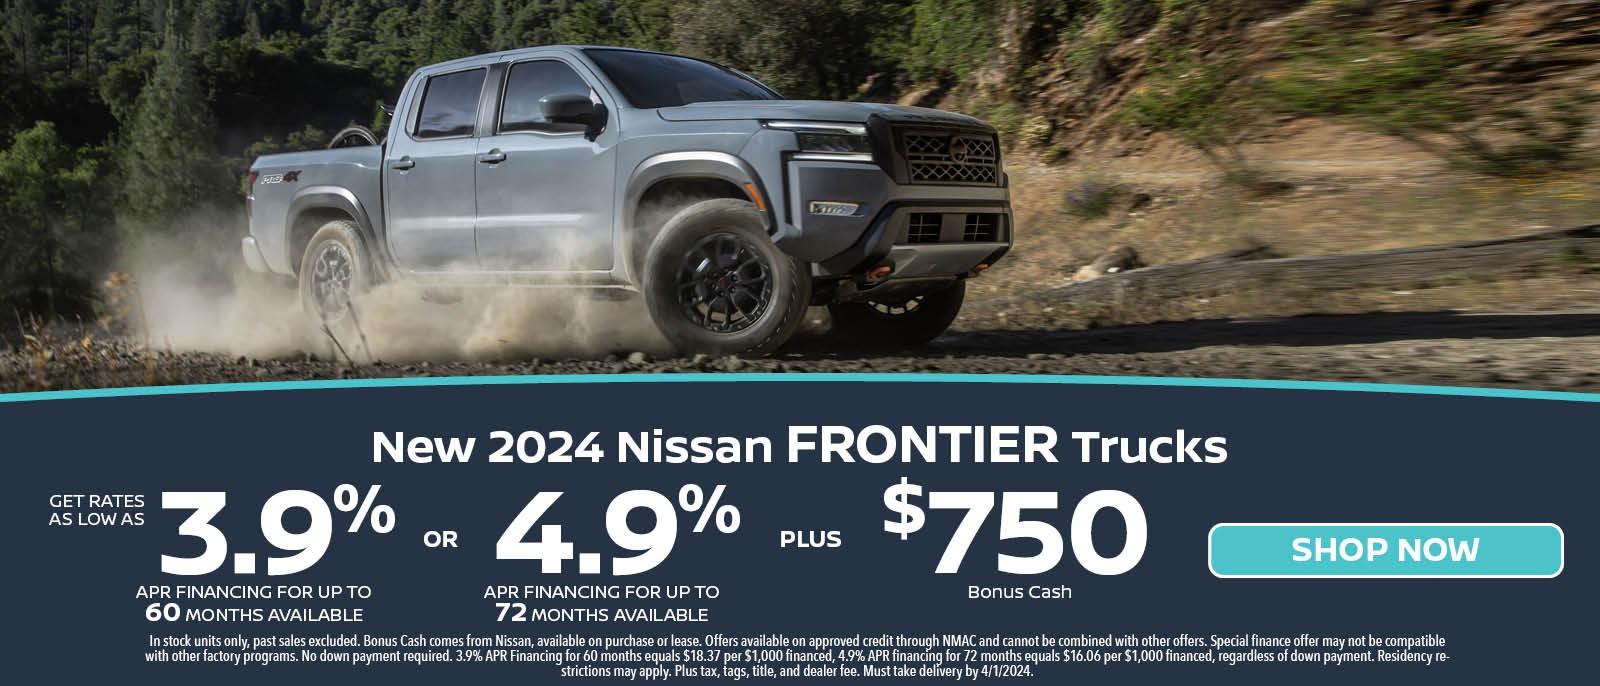 New 2024 Nissan Frontier Trucks